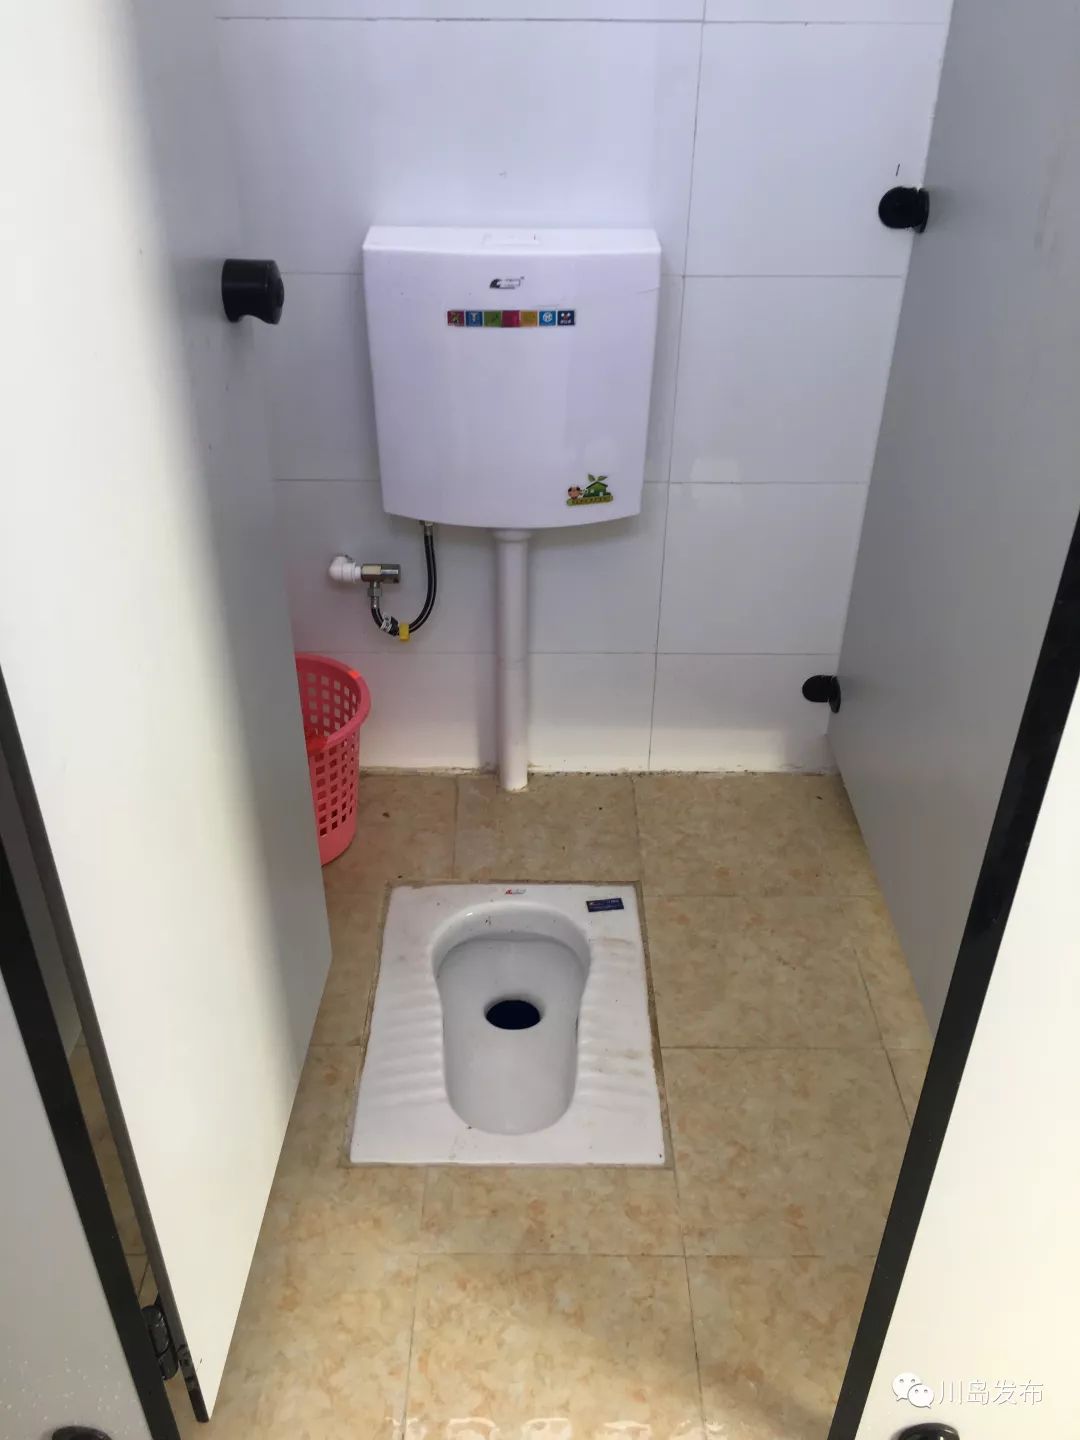 厕所革命一小步,文明乡村一大步——川岛39间公厕全面建成